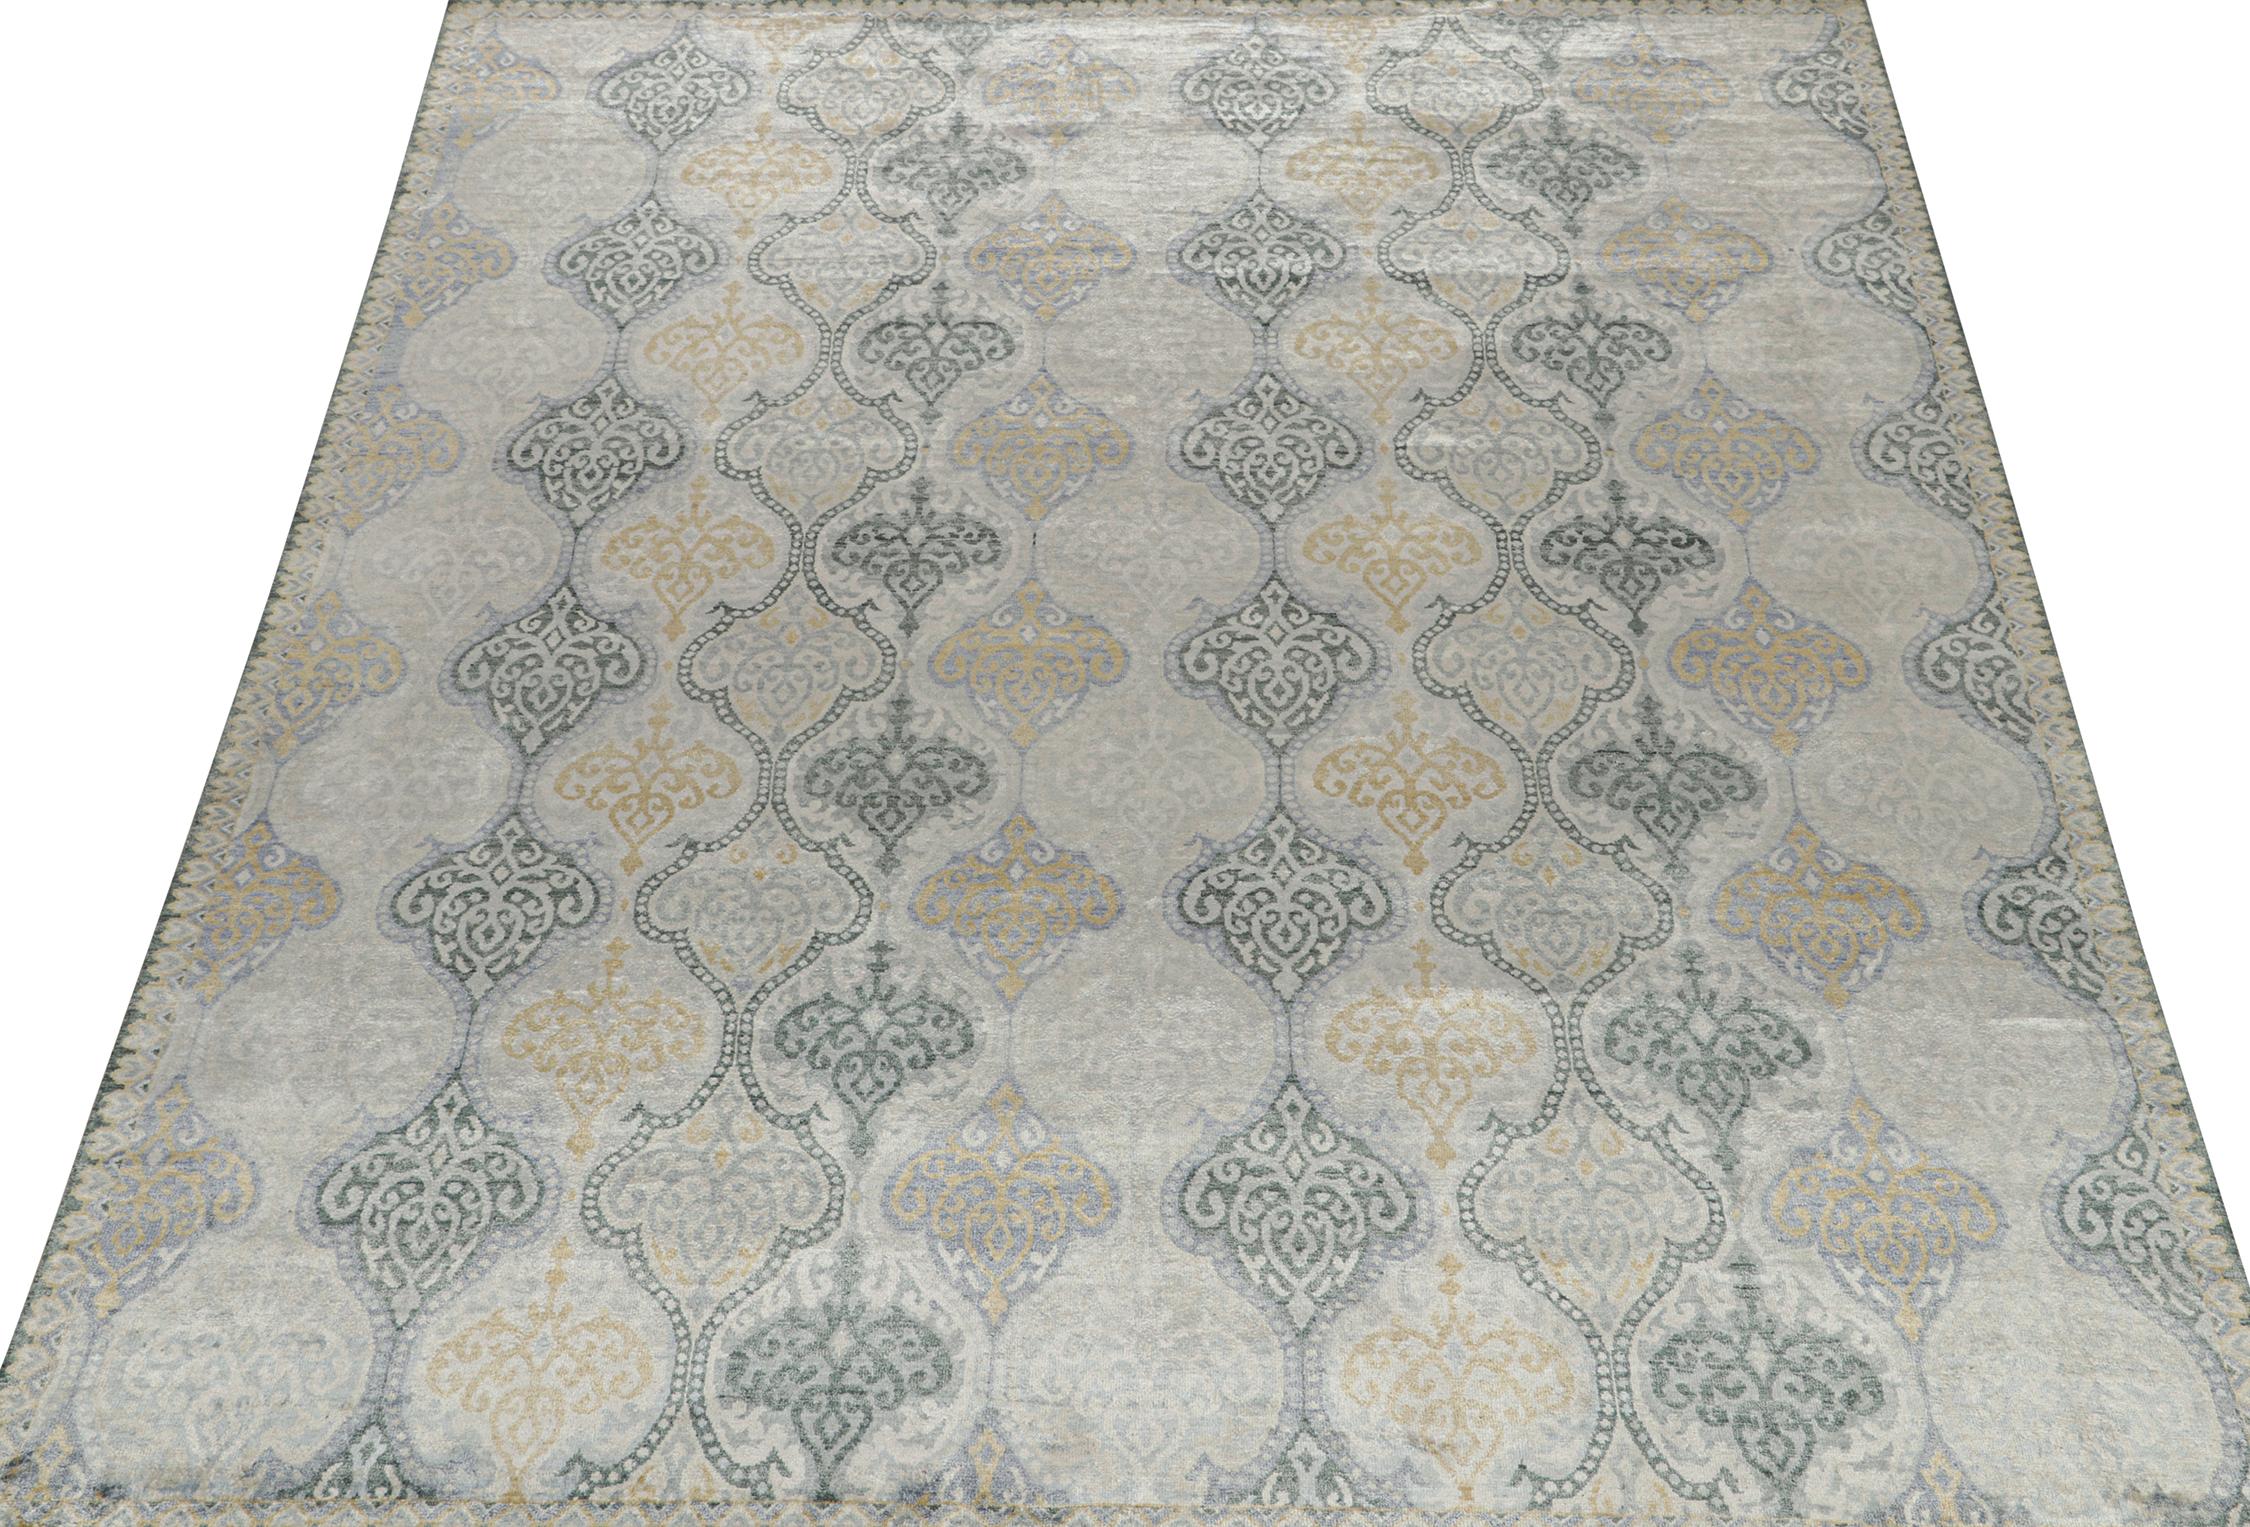 Un tapis 8x10 inspiré des styles de tapis traditionnels, de la Collection Modern Classics de Rug & Kilim. Noué à la main en laine, il présente une confluence de motifs floraux gris, beiges, bleus et dorés avec une grâce classique.
Plus loin dans le